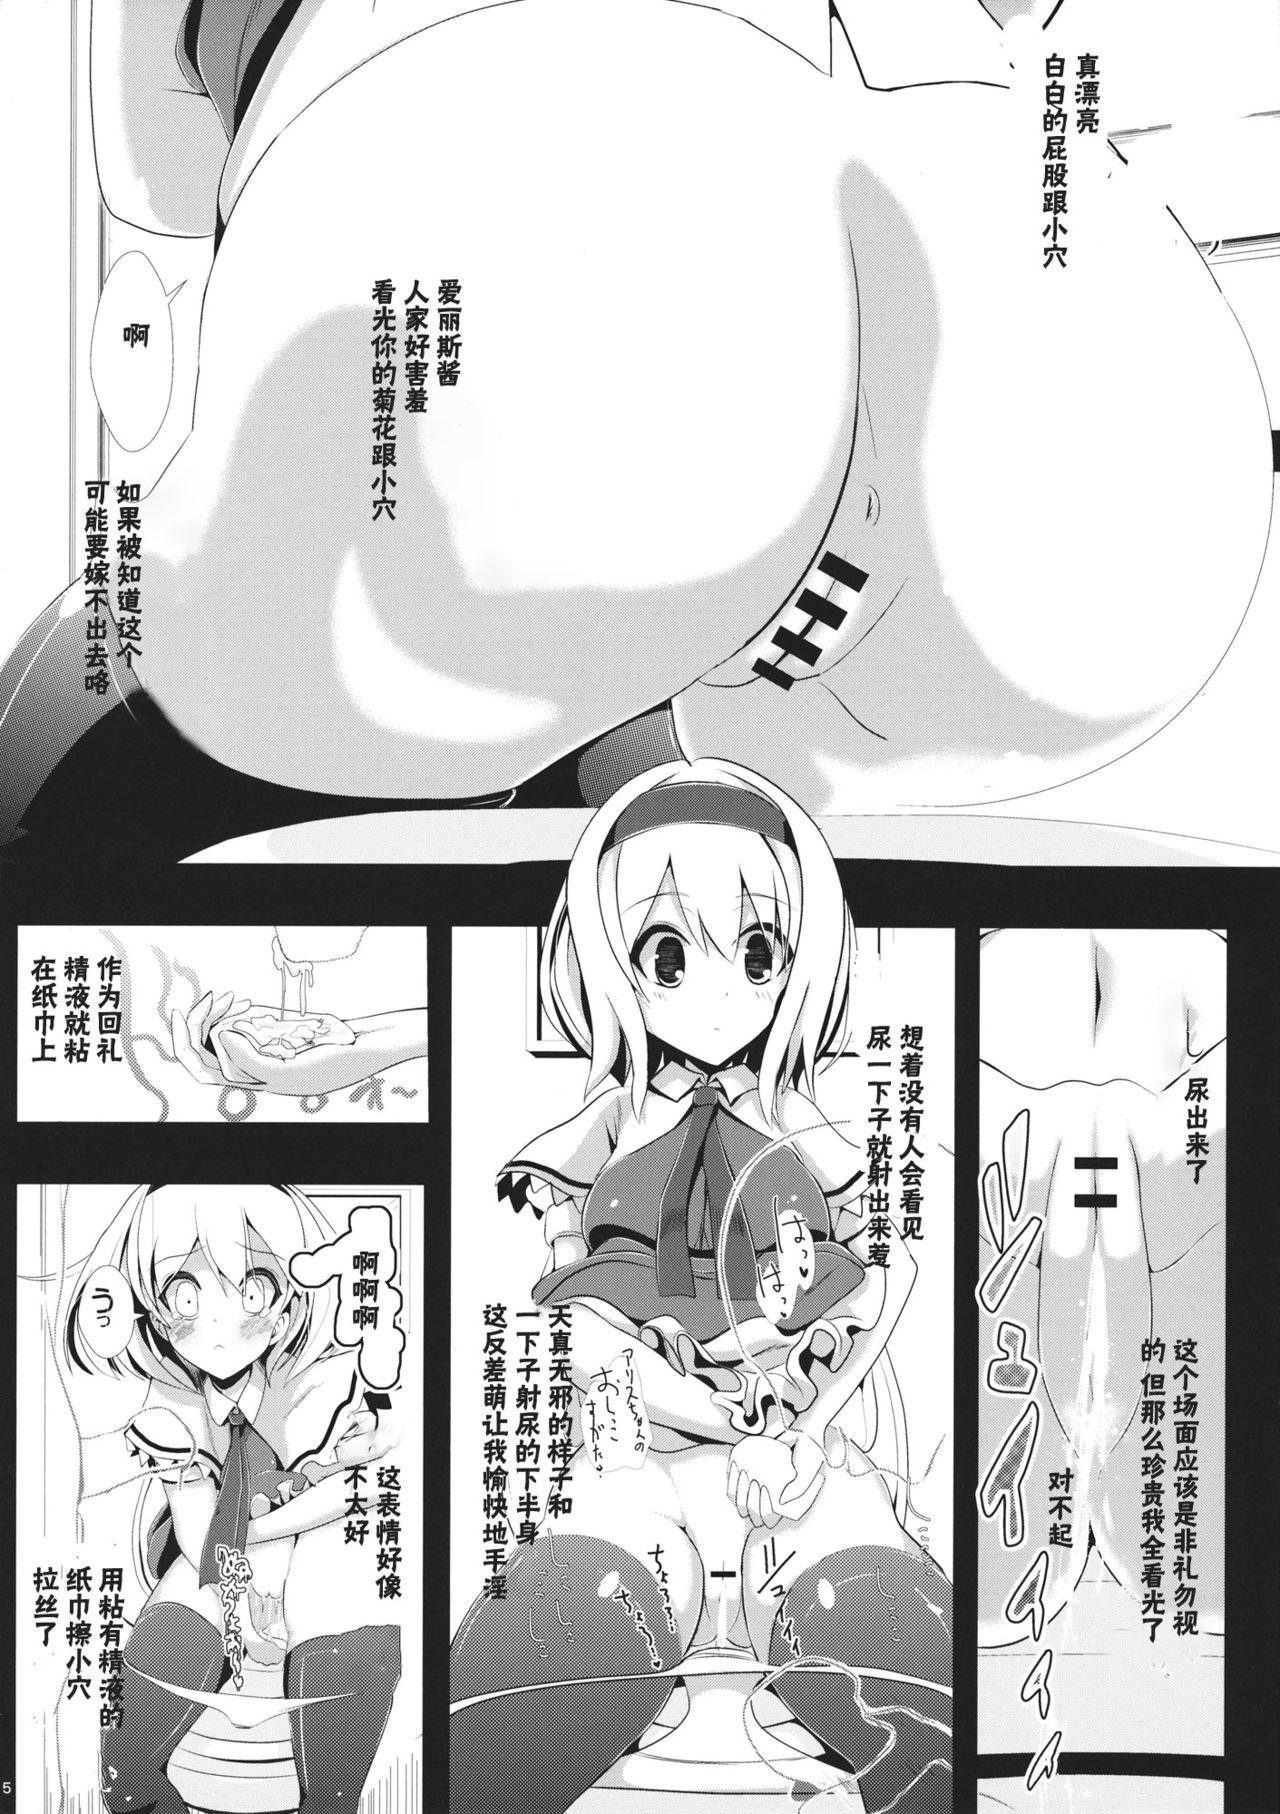 Oldyoung Touhou Toumei Ningen 1 Shinnyuu Alice n Chi - Touhou project Casado - Page 6